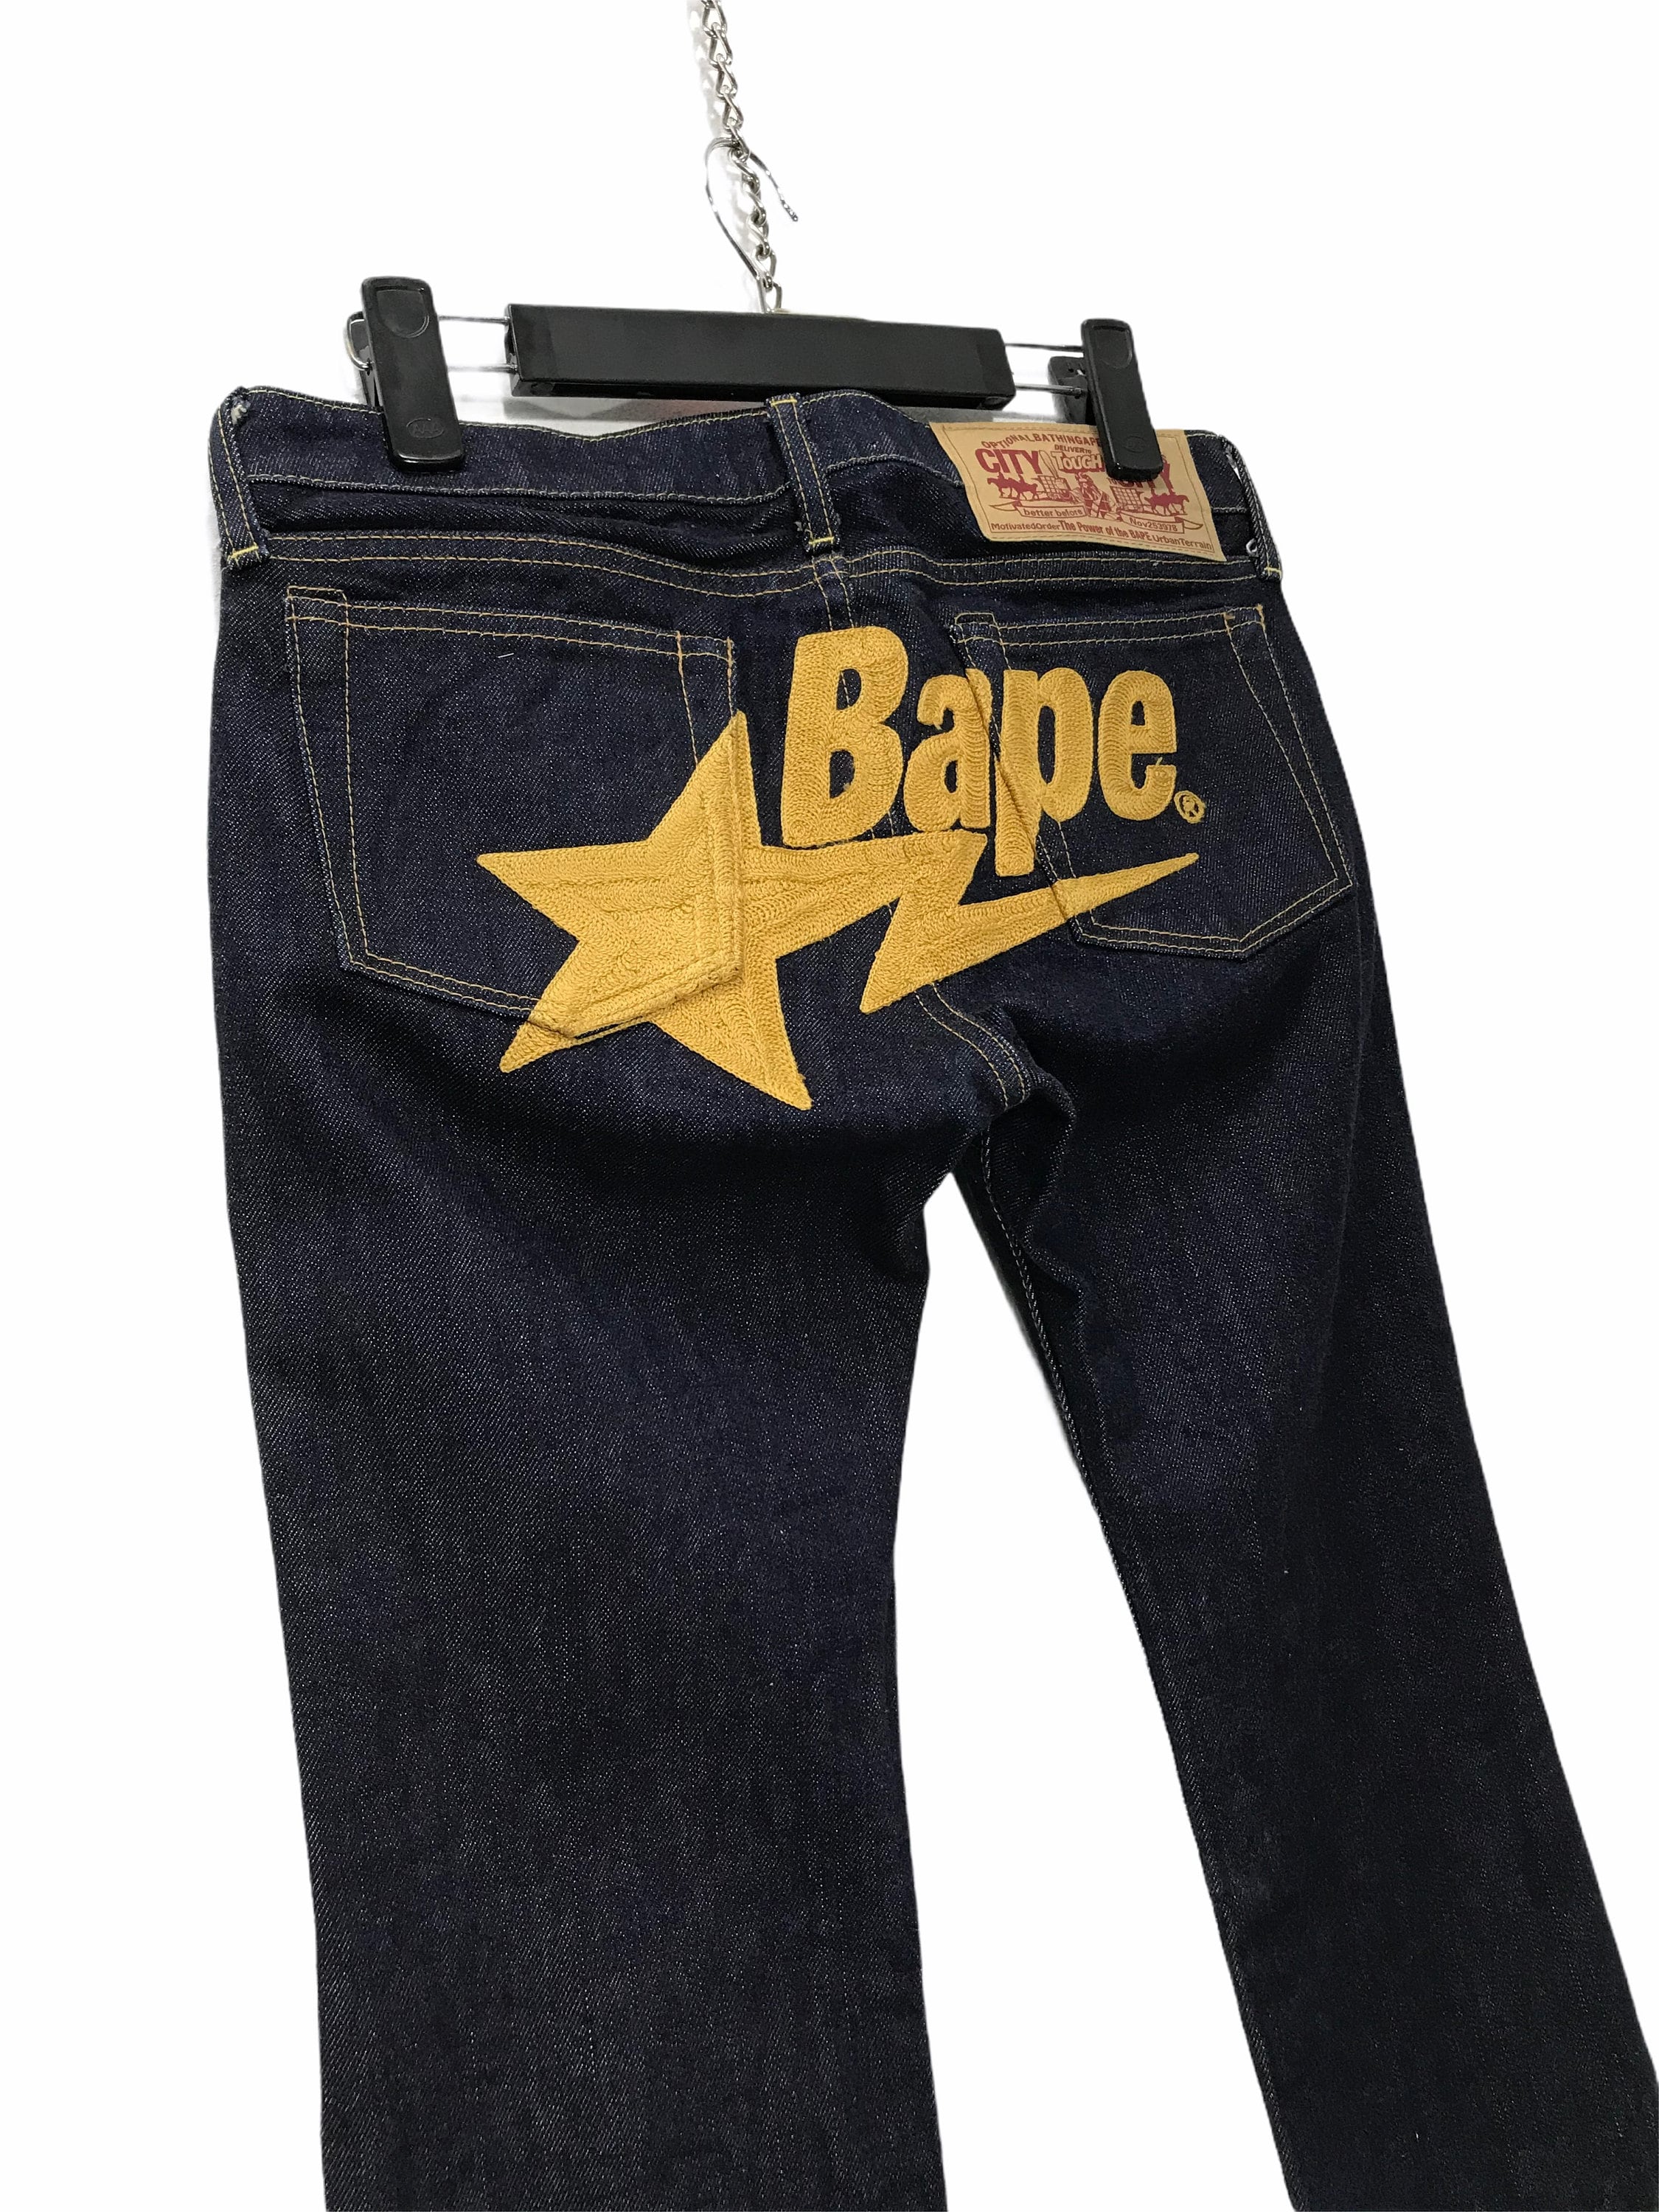 Authentic Vintage Bape Jeans hakodate-suiren.com